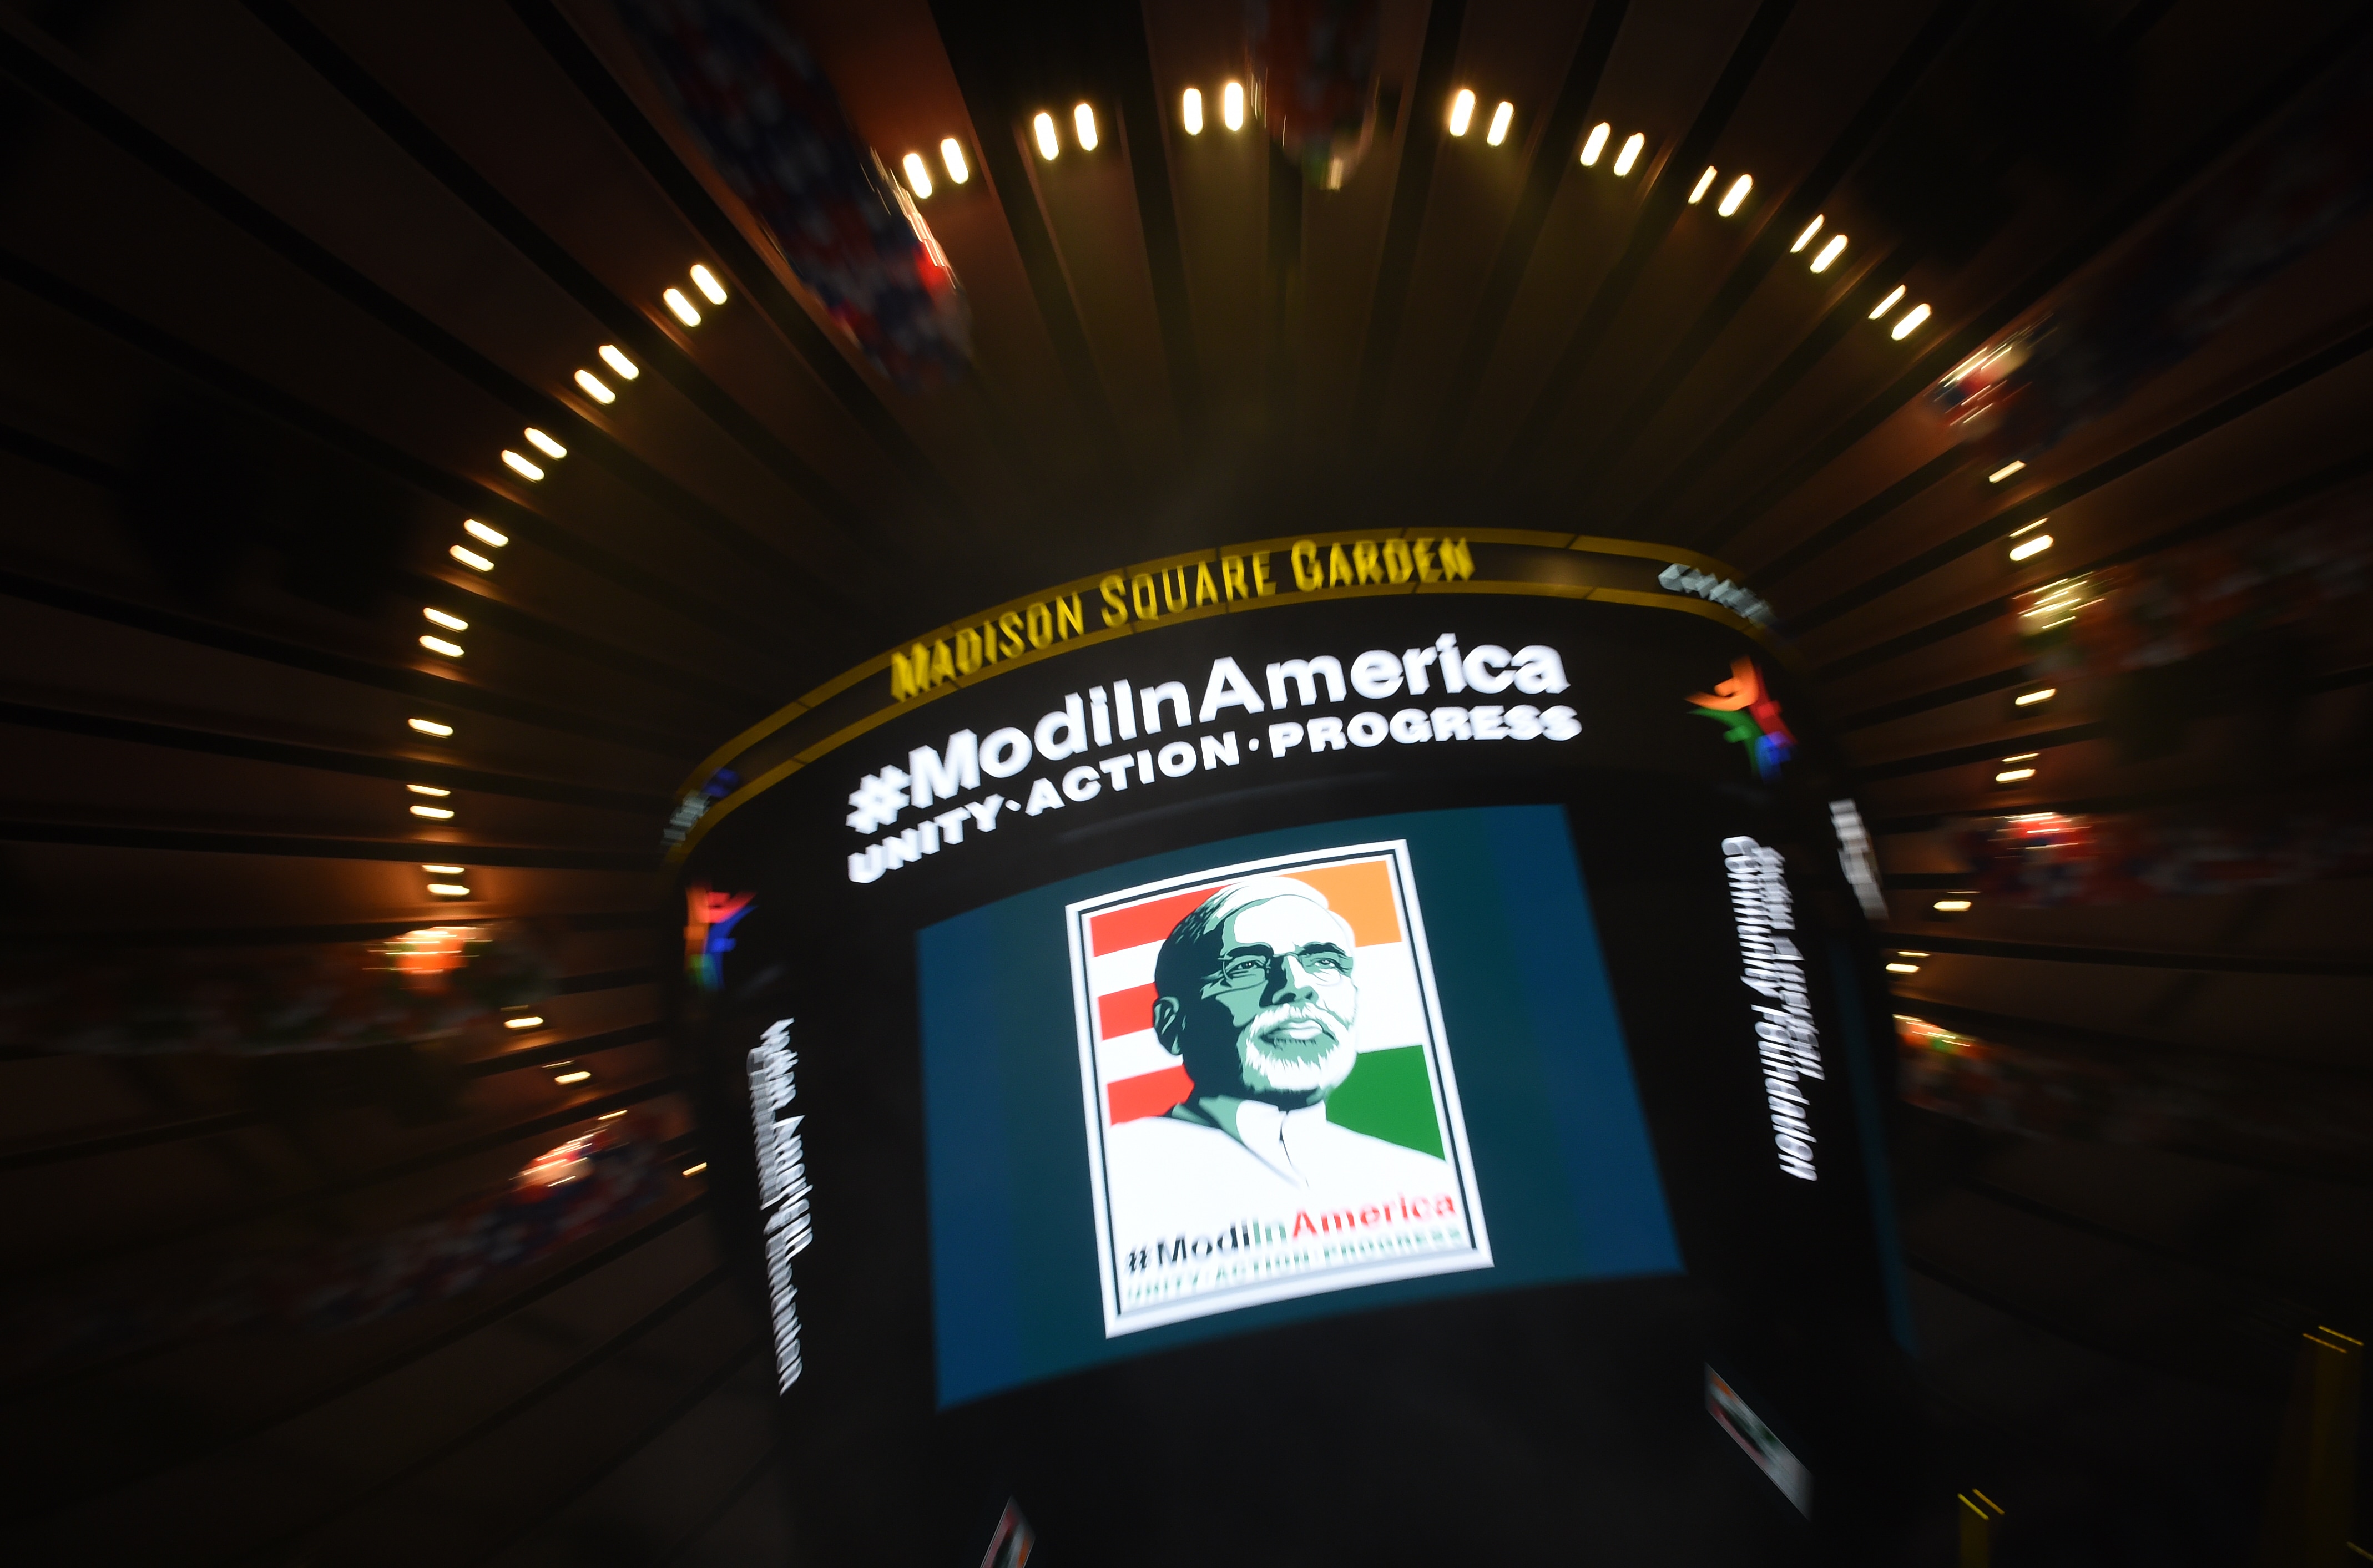 Photo : Rockstar Welcome for PM Modi at Madison Square Garden